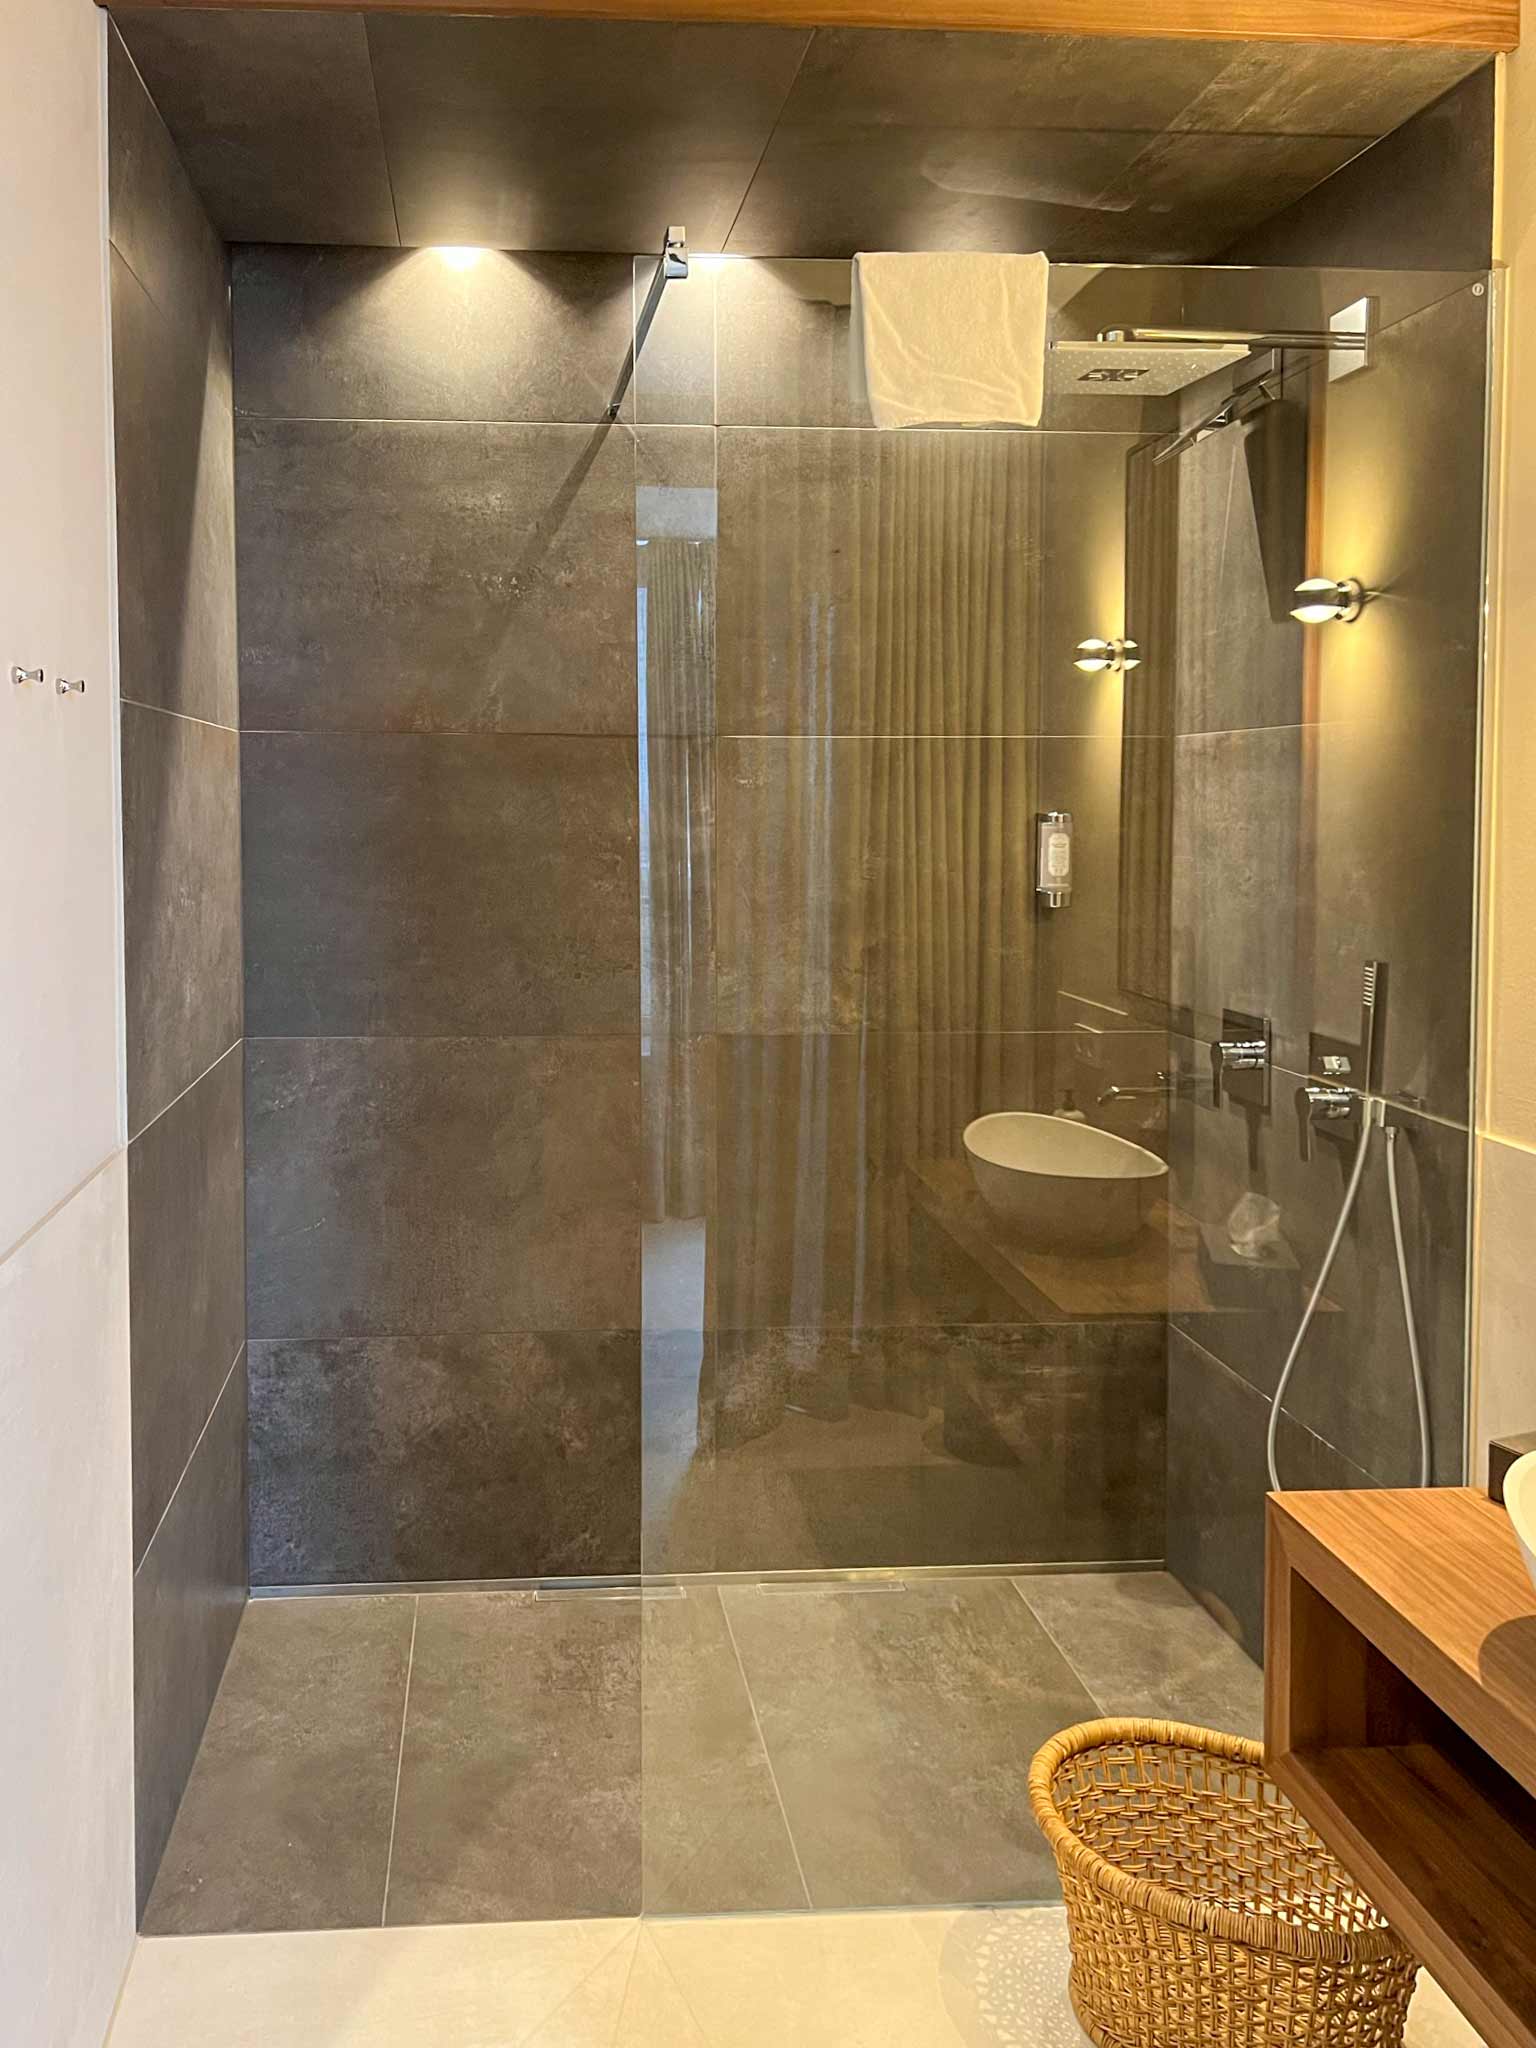 Bodengleiche Dusche mit dunklen großformatige bzw. XXL-Fliesen in einem hell gefliesten Badezimmer.